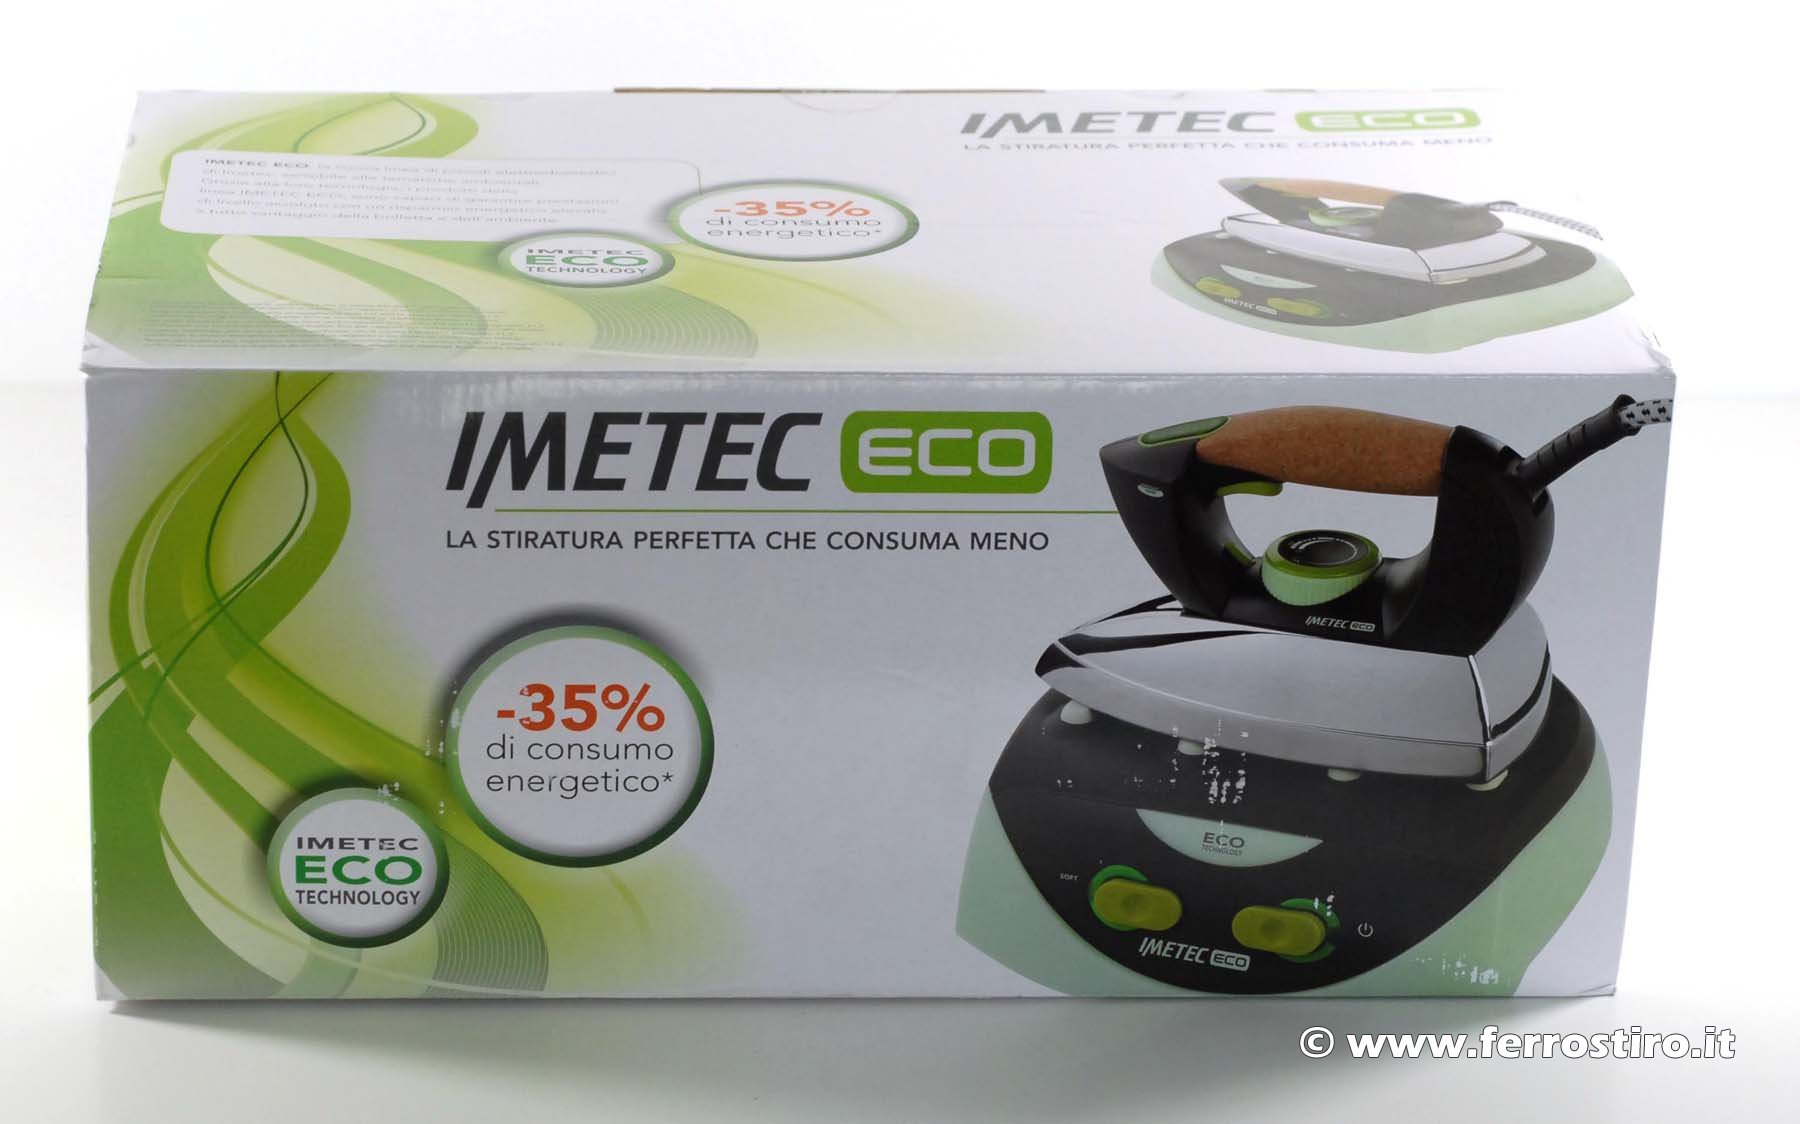 Imetec Eco Compact 9256, Opinioni e Prezzi